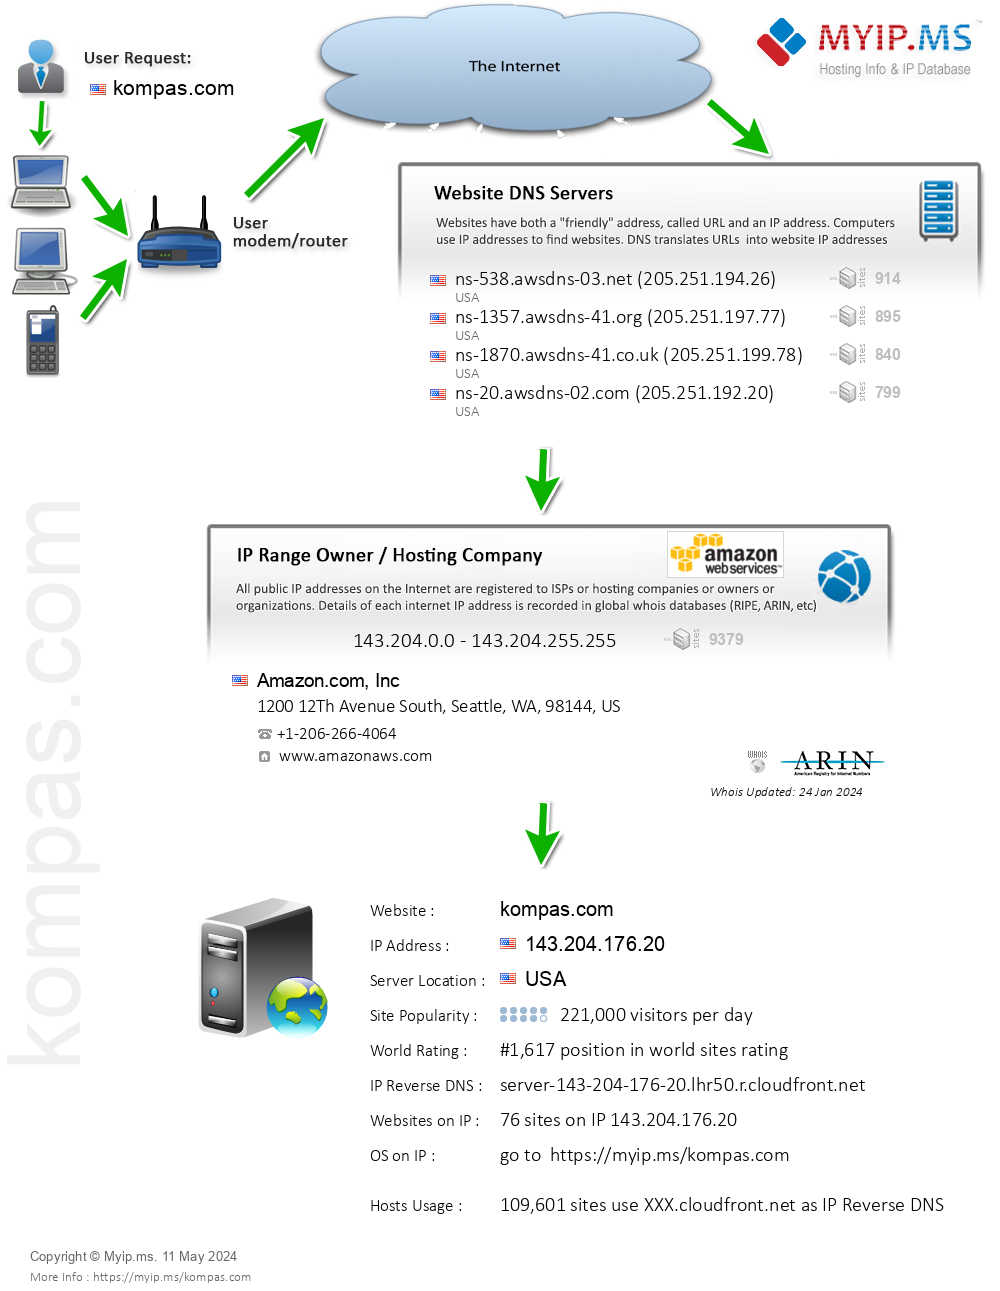 Kompas.com - Website Hosting Visual IP Diagram